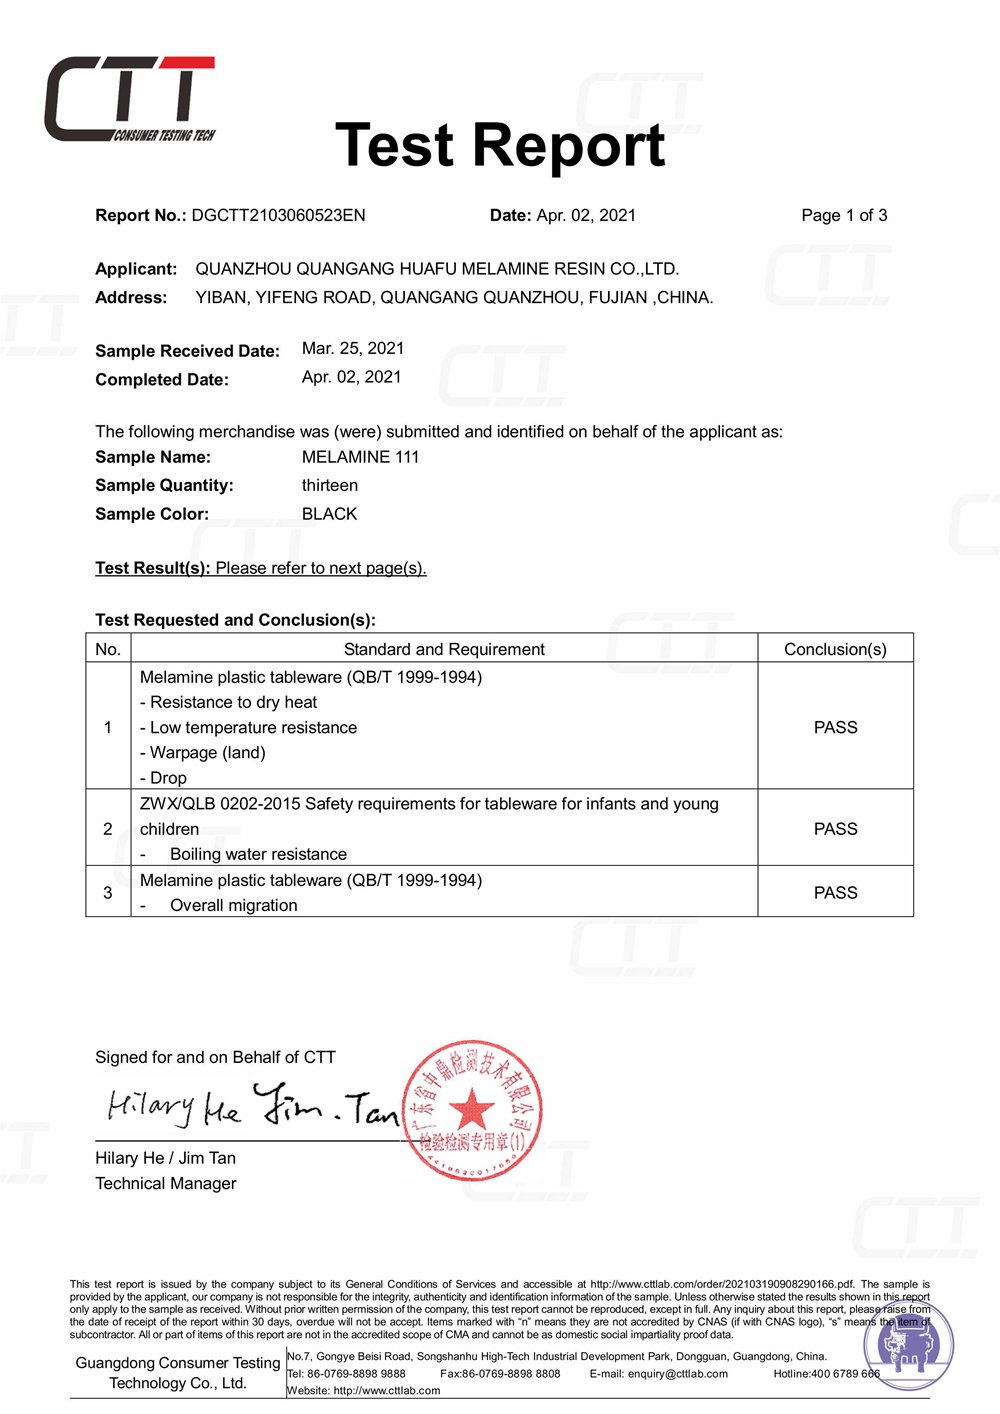 Huafu Chemicals：Certificado CTT em 2021
        